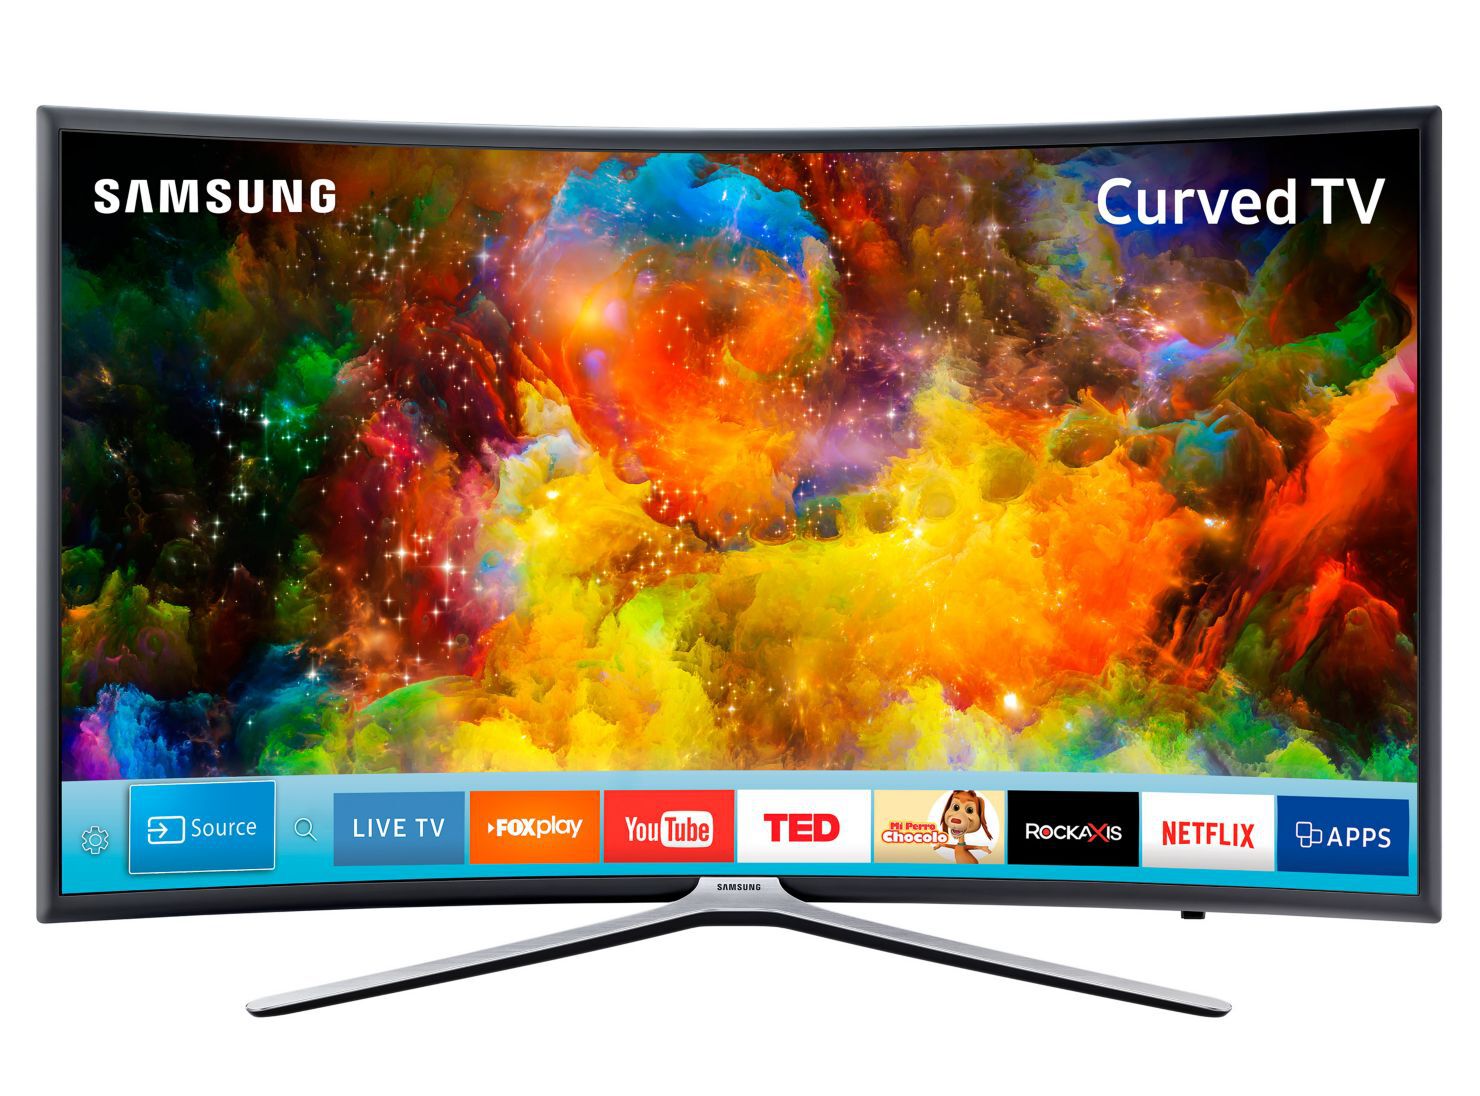 Tv Samsung de 21 pulgadas Ultra - Electro visión rojas